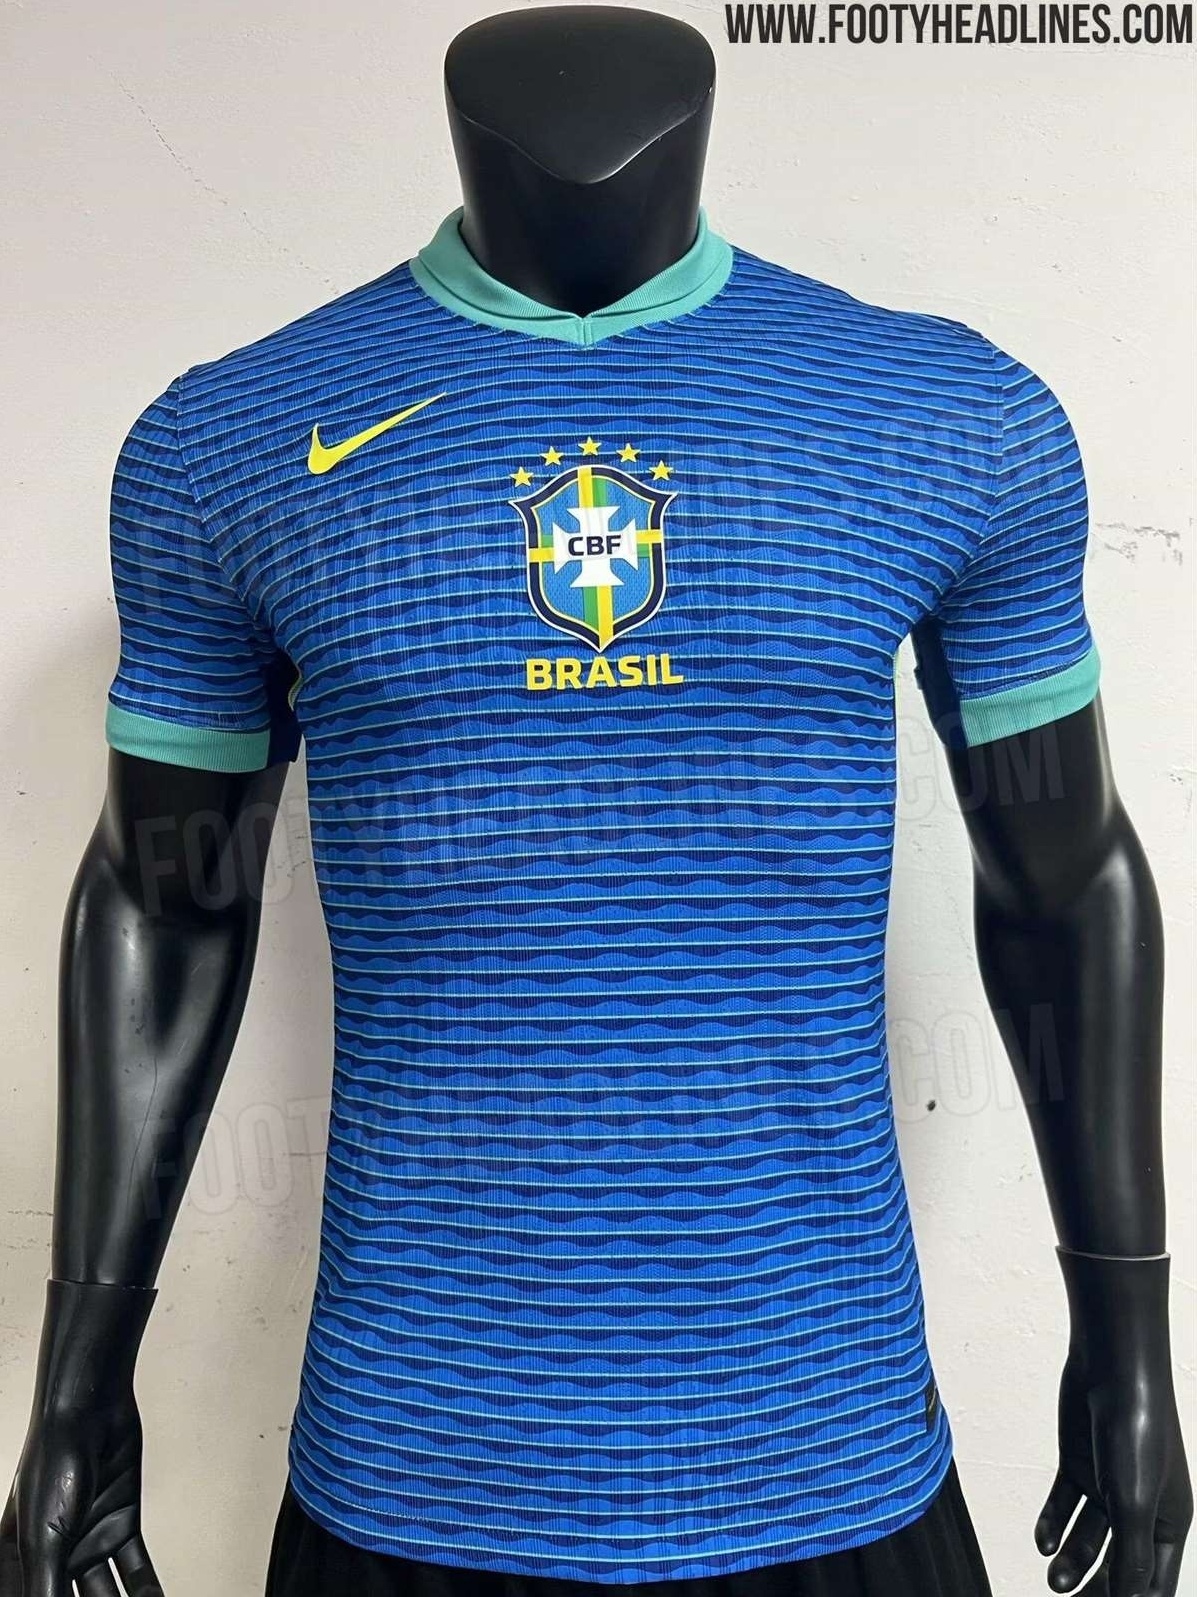 Site revela possível novo uniforme da Seleção Brasileira